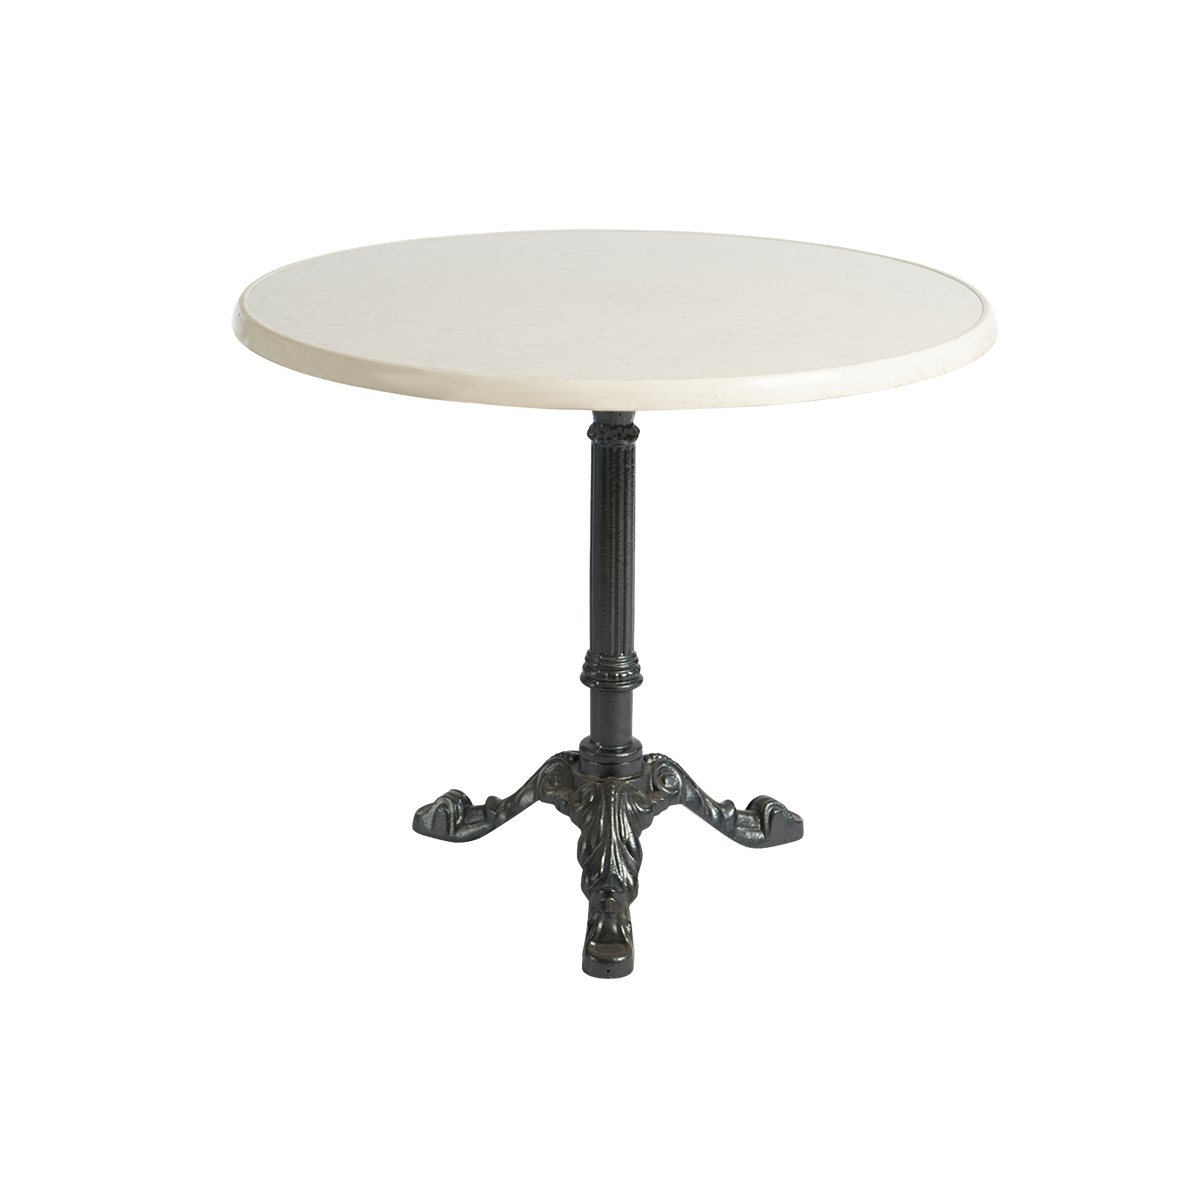 dieeventausstatter Sitztisch Classic Platte marmordekor rund